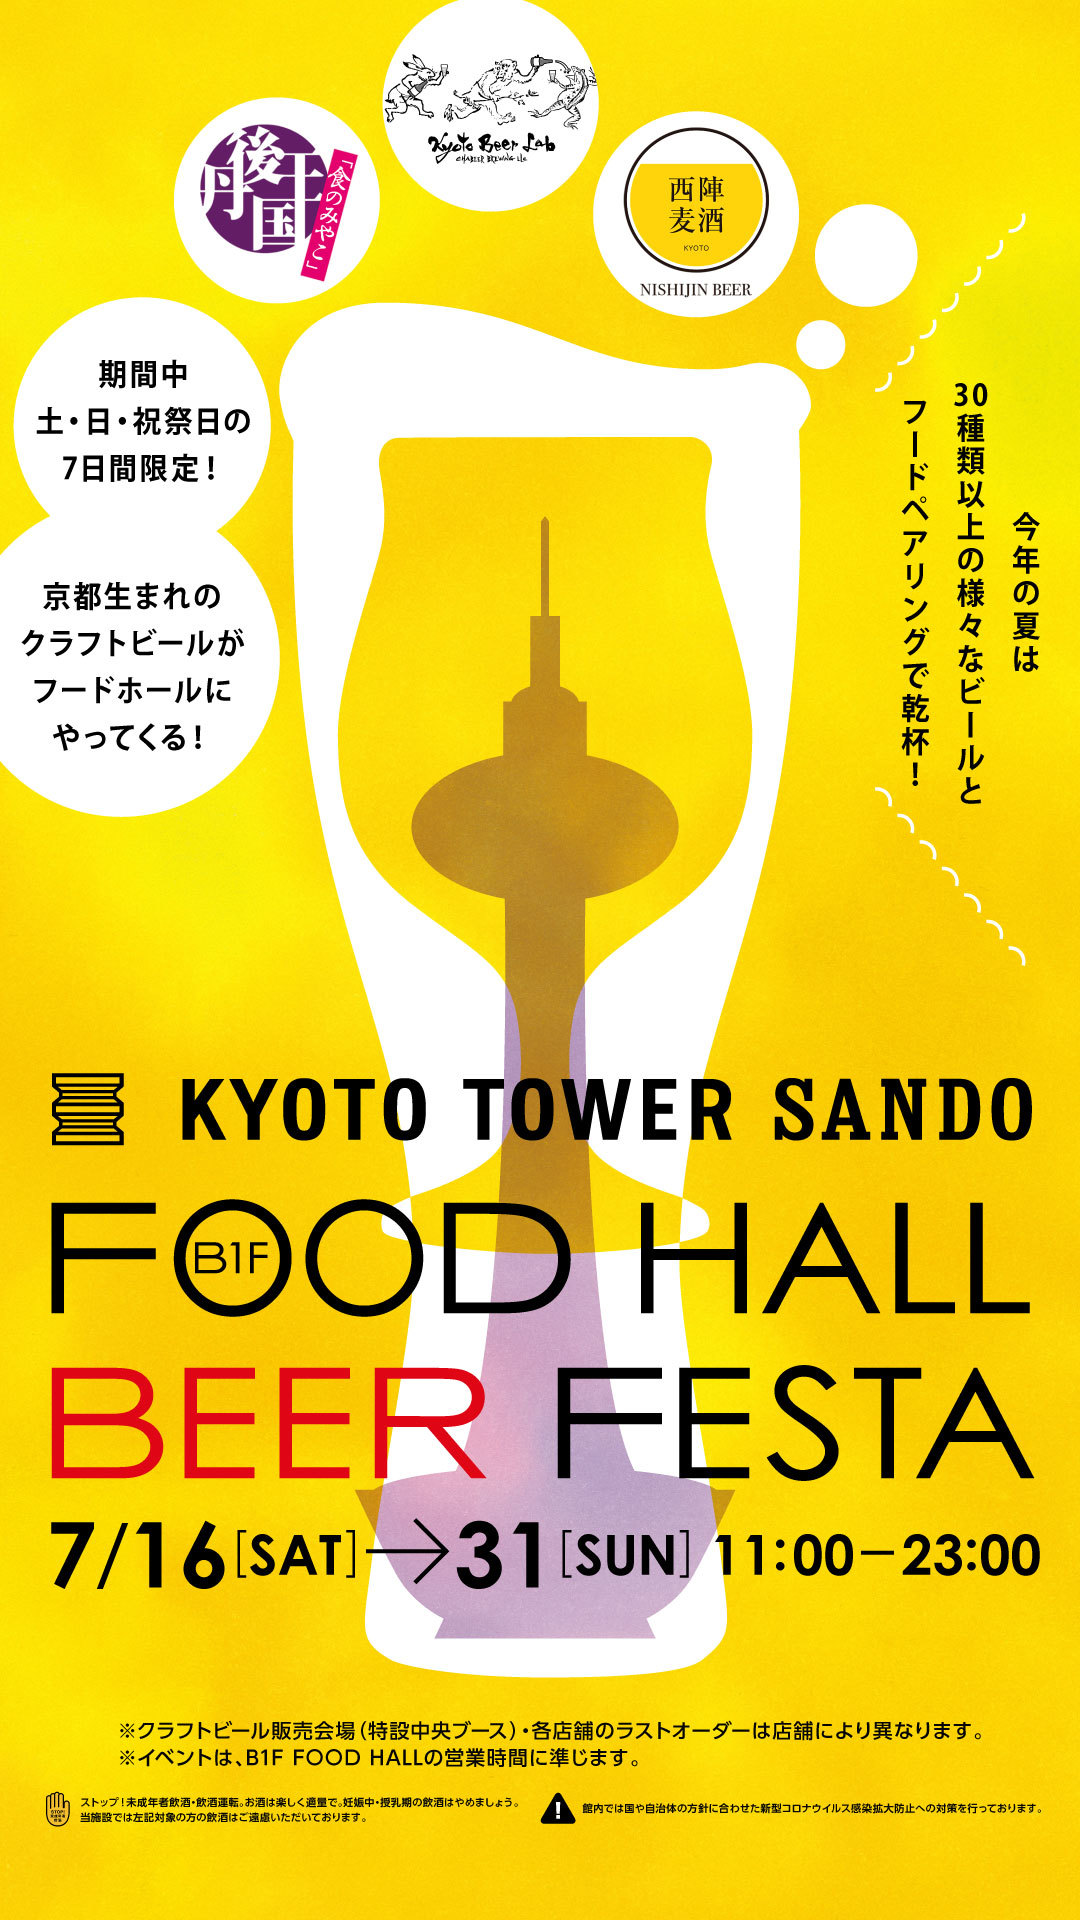 京都駅前スグ「京都タワーサンド」
『FOOD HALL BEER FESTA』を開催
京都クラフトビールのブルワリーが週替わりでB1F中央特設ブースに登場！